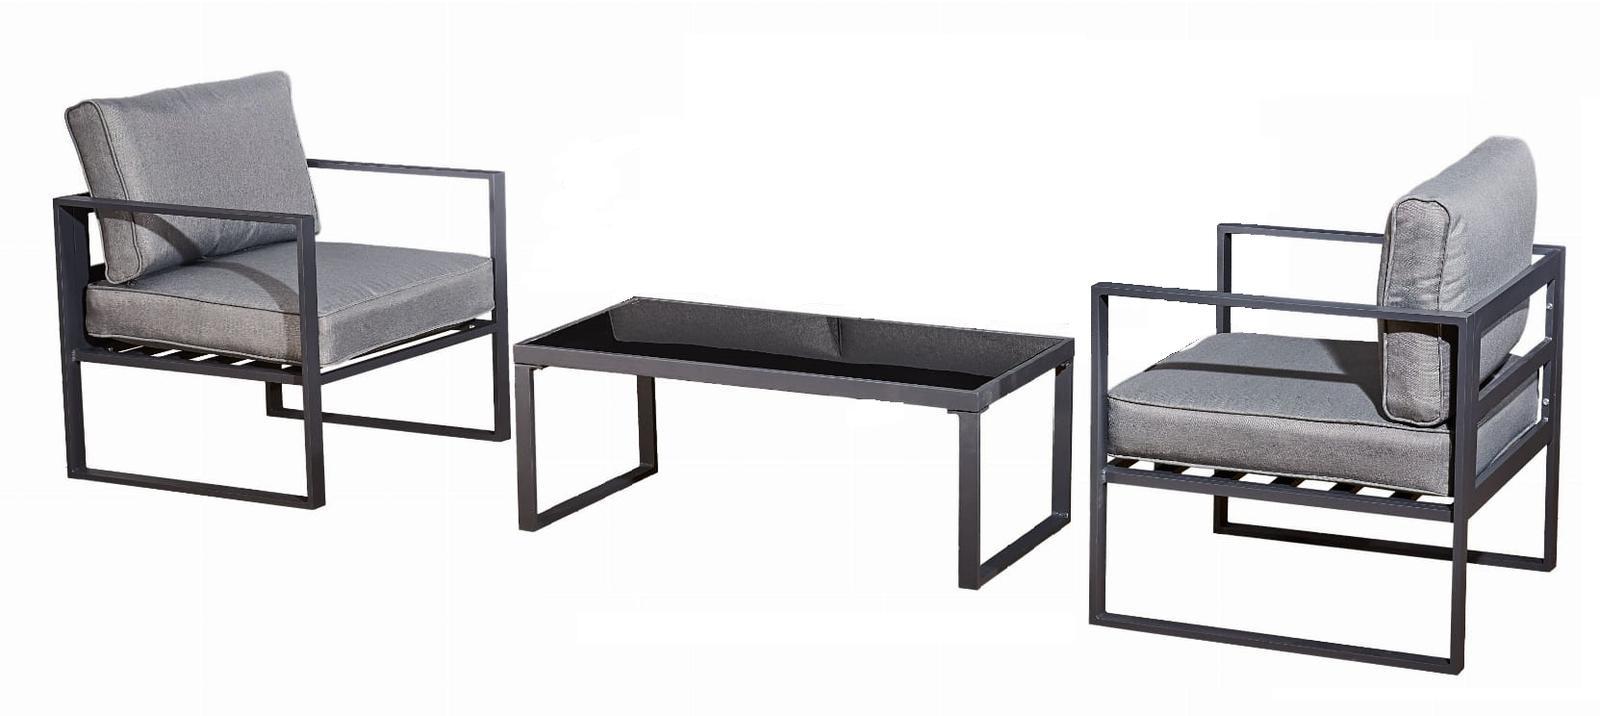 Zestaw mebli ogrodowych Mostrare 73x63x63 cm 2 fotele + stolik balkonowy aluminium na taras do ogrodu szary nr. 6